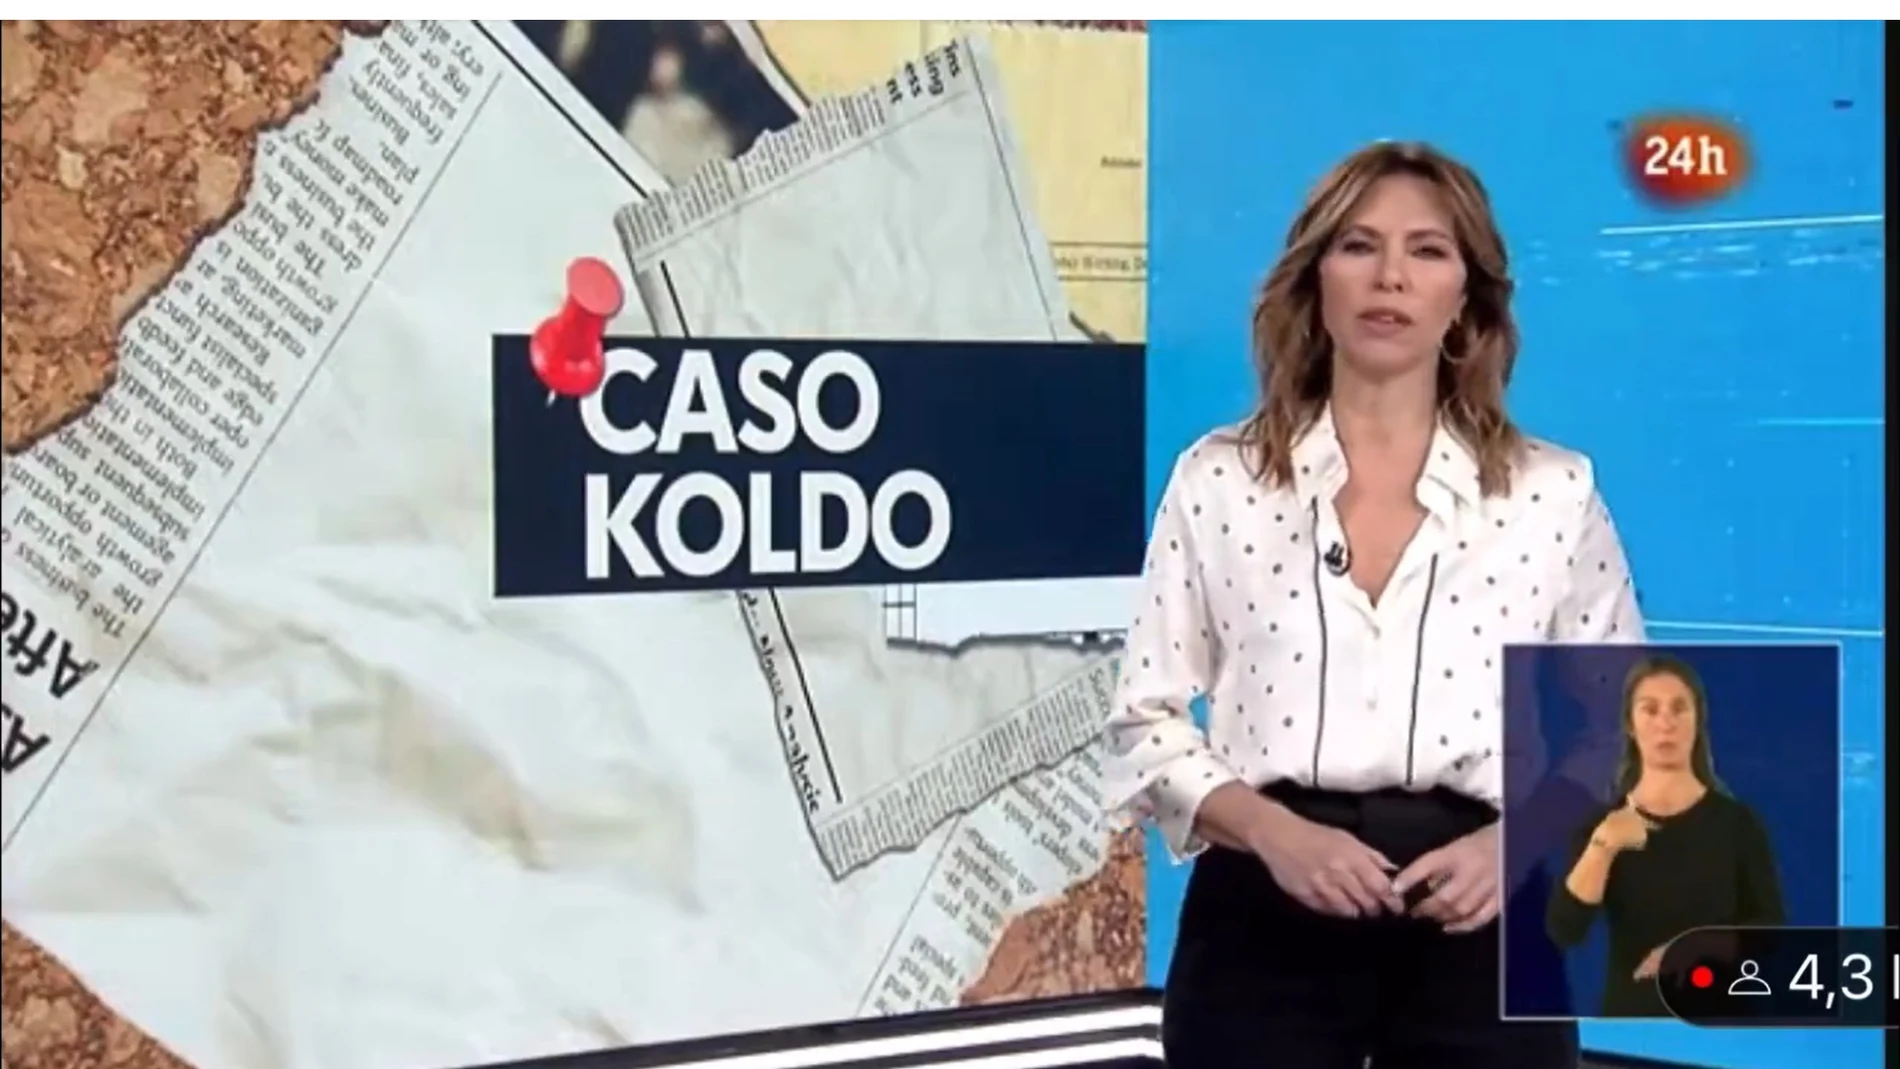 Plataforma Libre TVE denuncia la manipulación del "caso Koldo" en un telediario